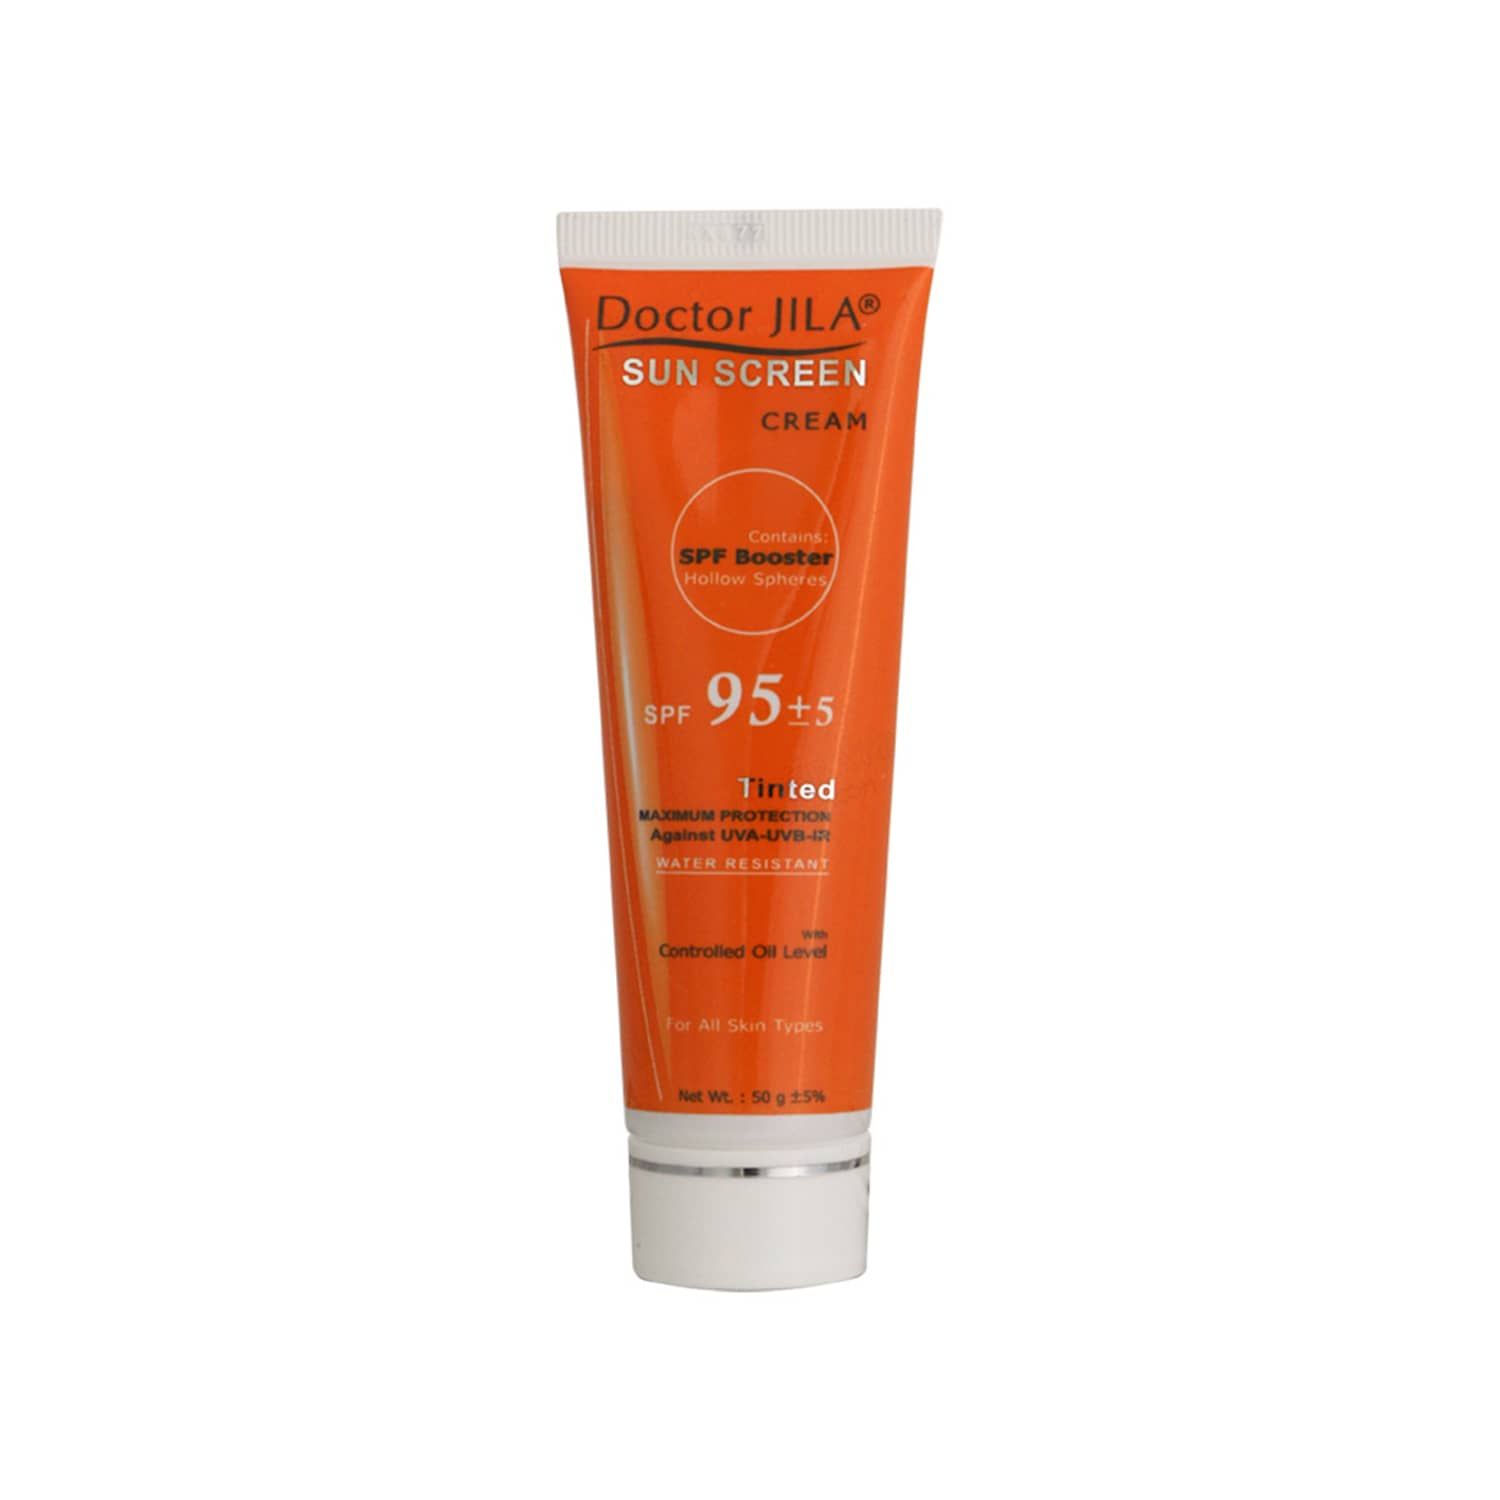 کرم ضد آفتاب دکتر ژیلا SPF 95 با چربی کنترل شده مناسب انواع پوست وزن 50 گرم - رنگی